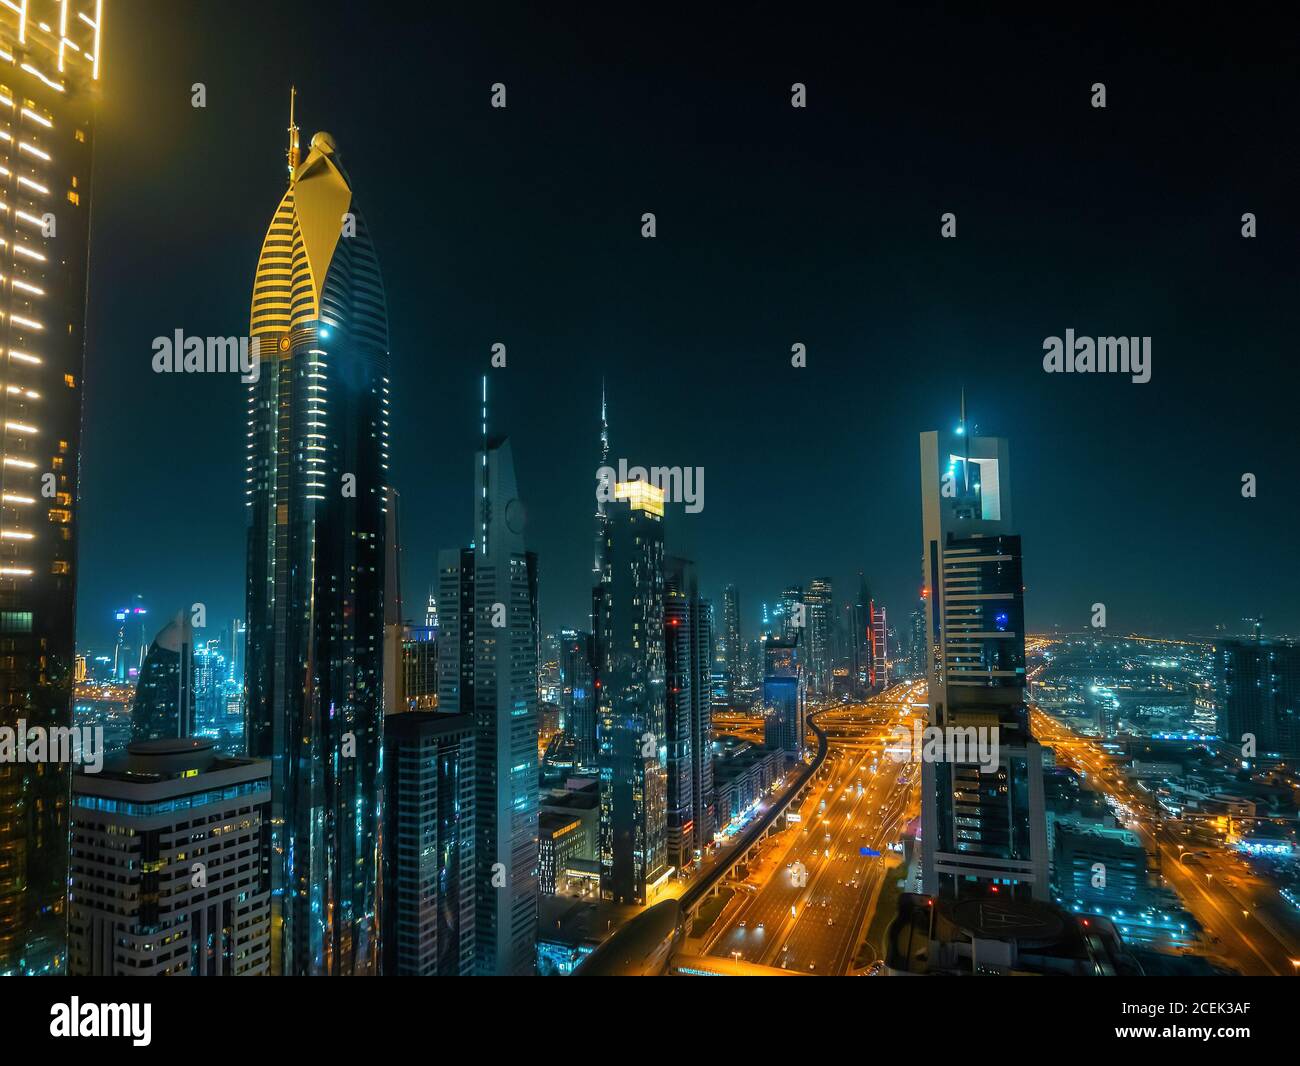 Hermoso paisaje urbano nocturno de Dubai, modernos edificios futuristas con iluminación, vista desde arriba, Emiratos Árabes Unidos. Foto de stock